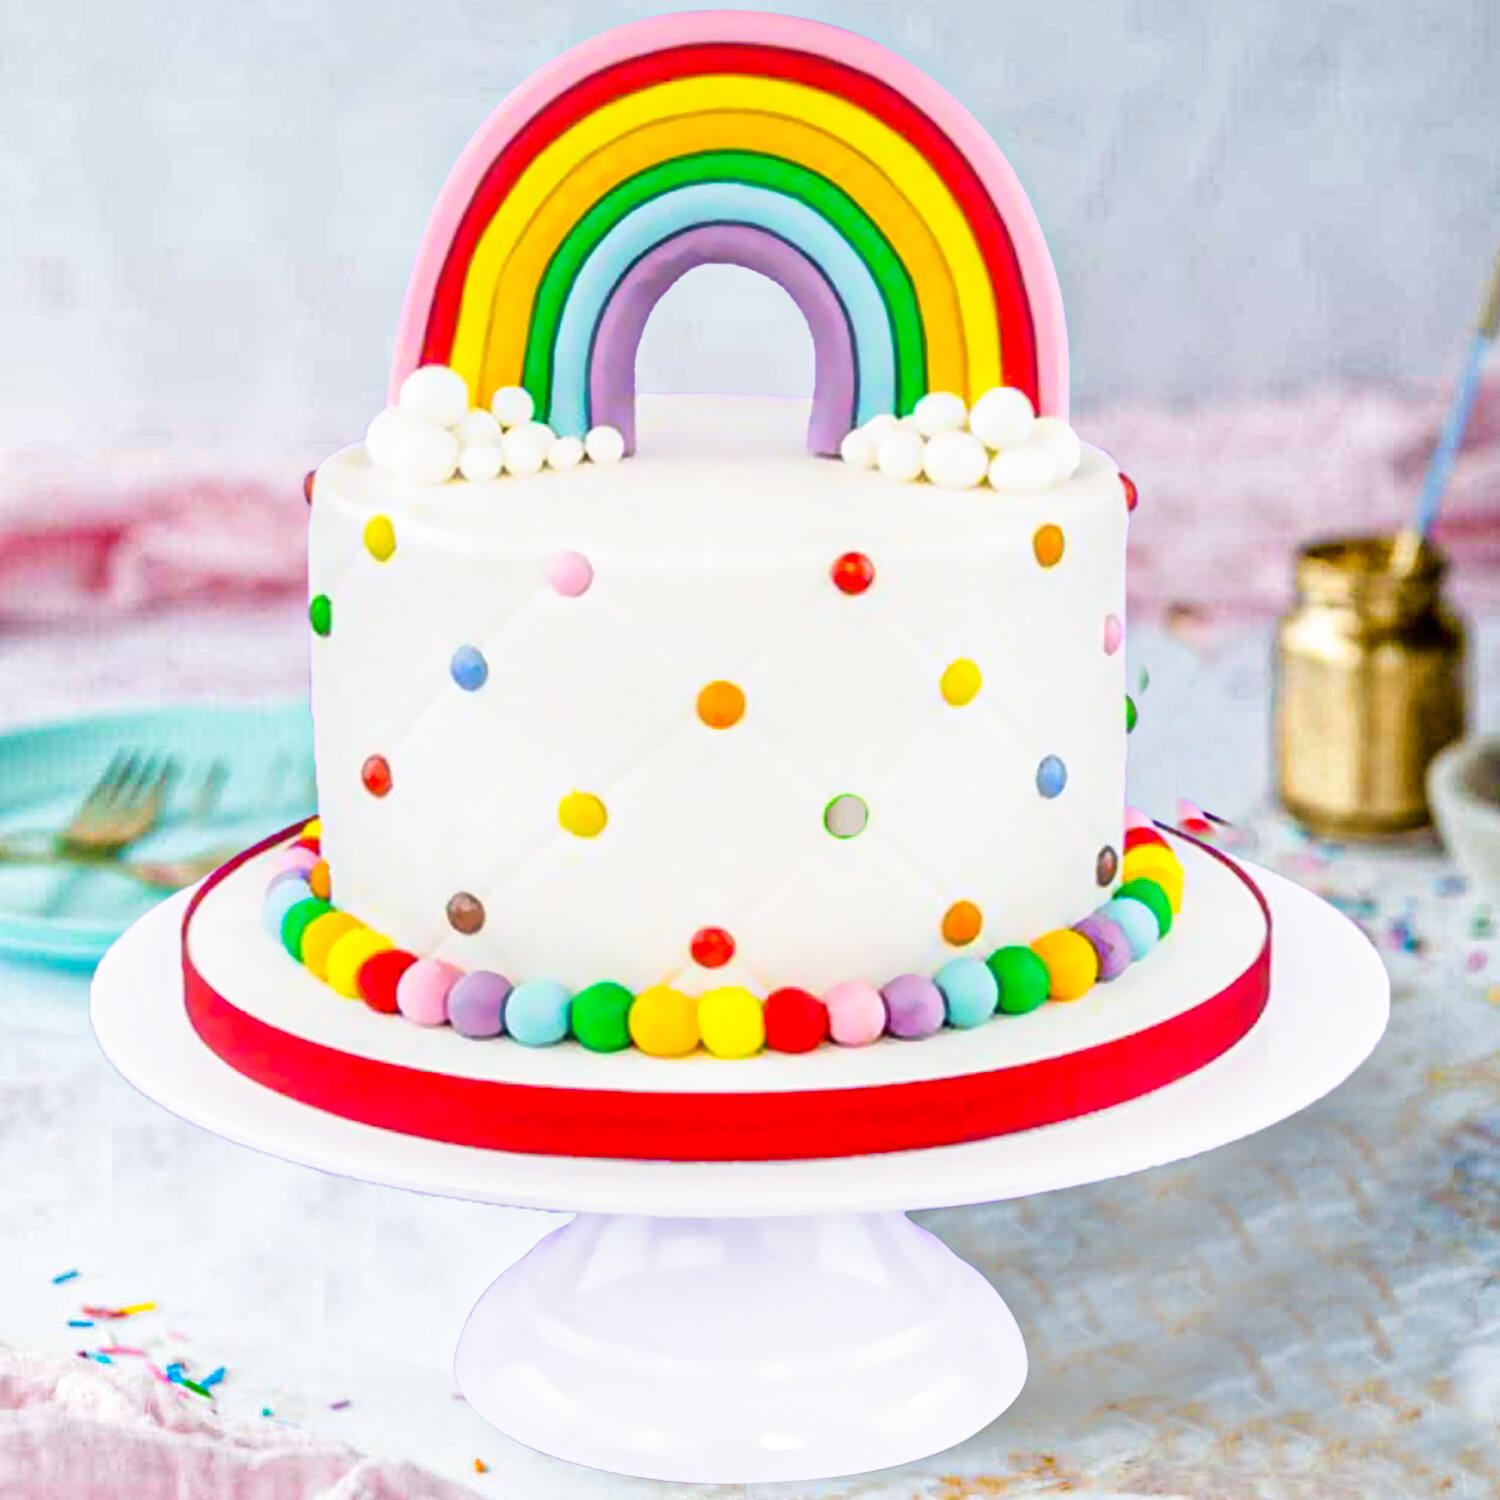 Rainbow Birthday Cake - The Little Kitchen